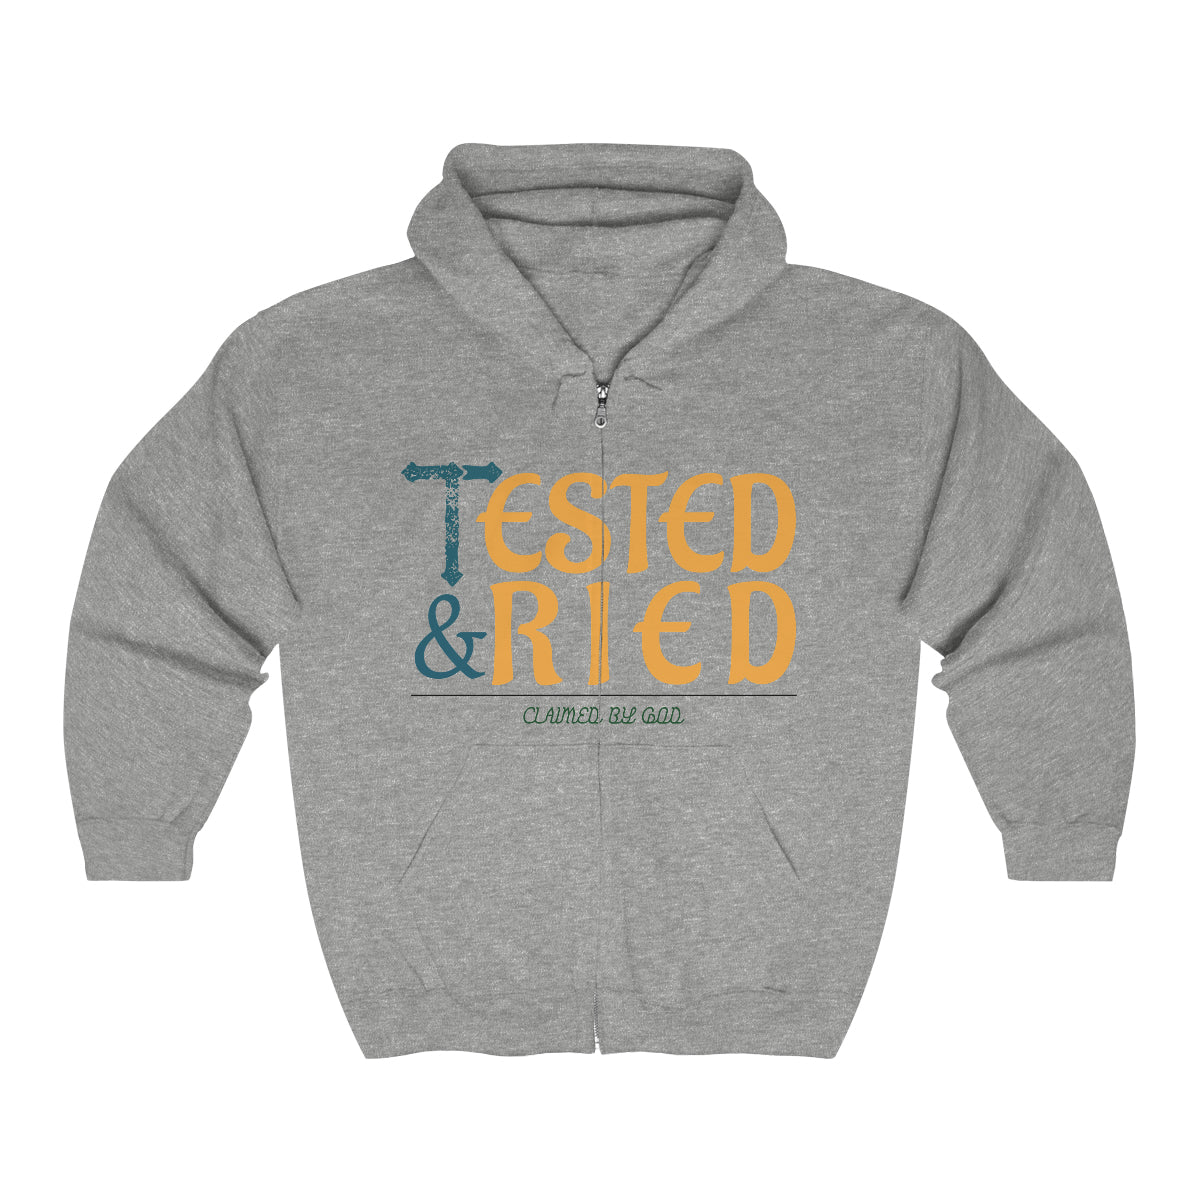 Tested & Tried Unisex Heavy Blend Full Zip Hooded Sweatshirt Printify